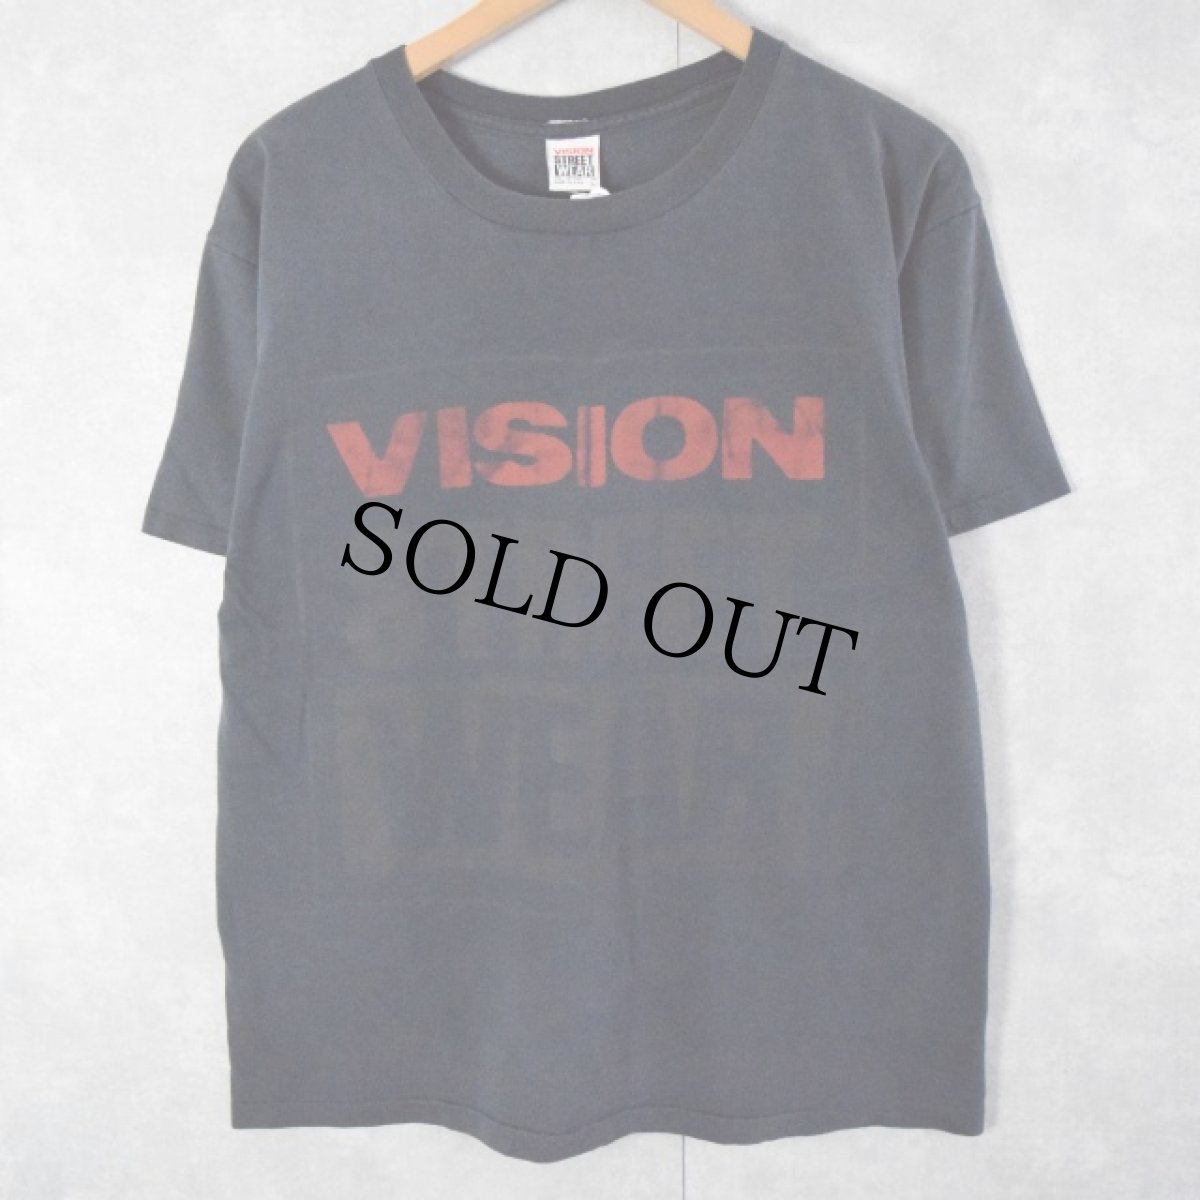 画像1: 90's VISION STREET WEAR USA製 ロゴプリントTシャツ L (1)